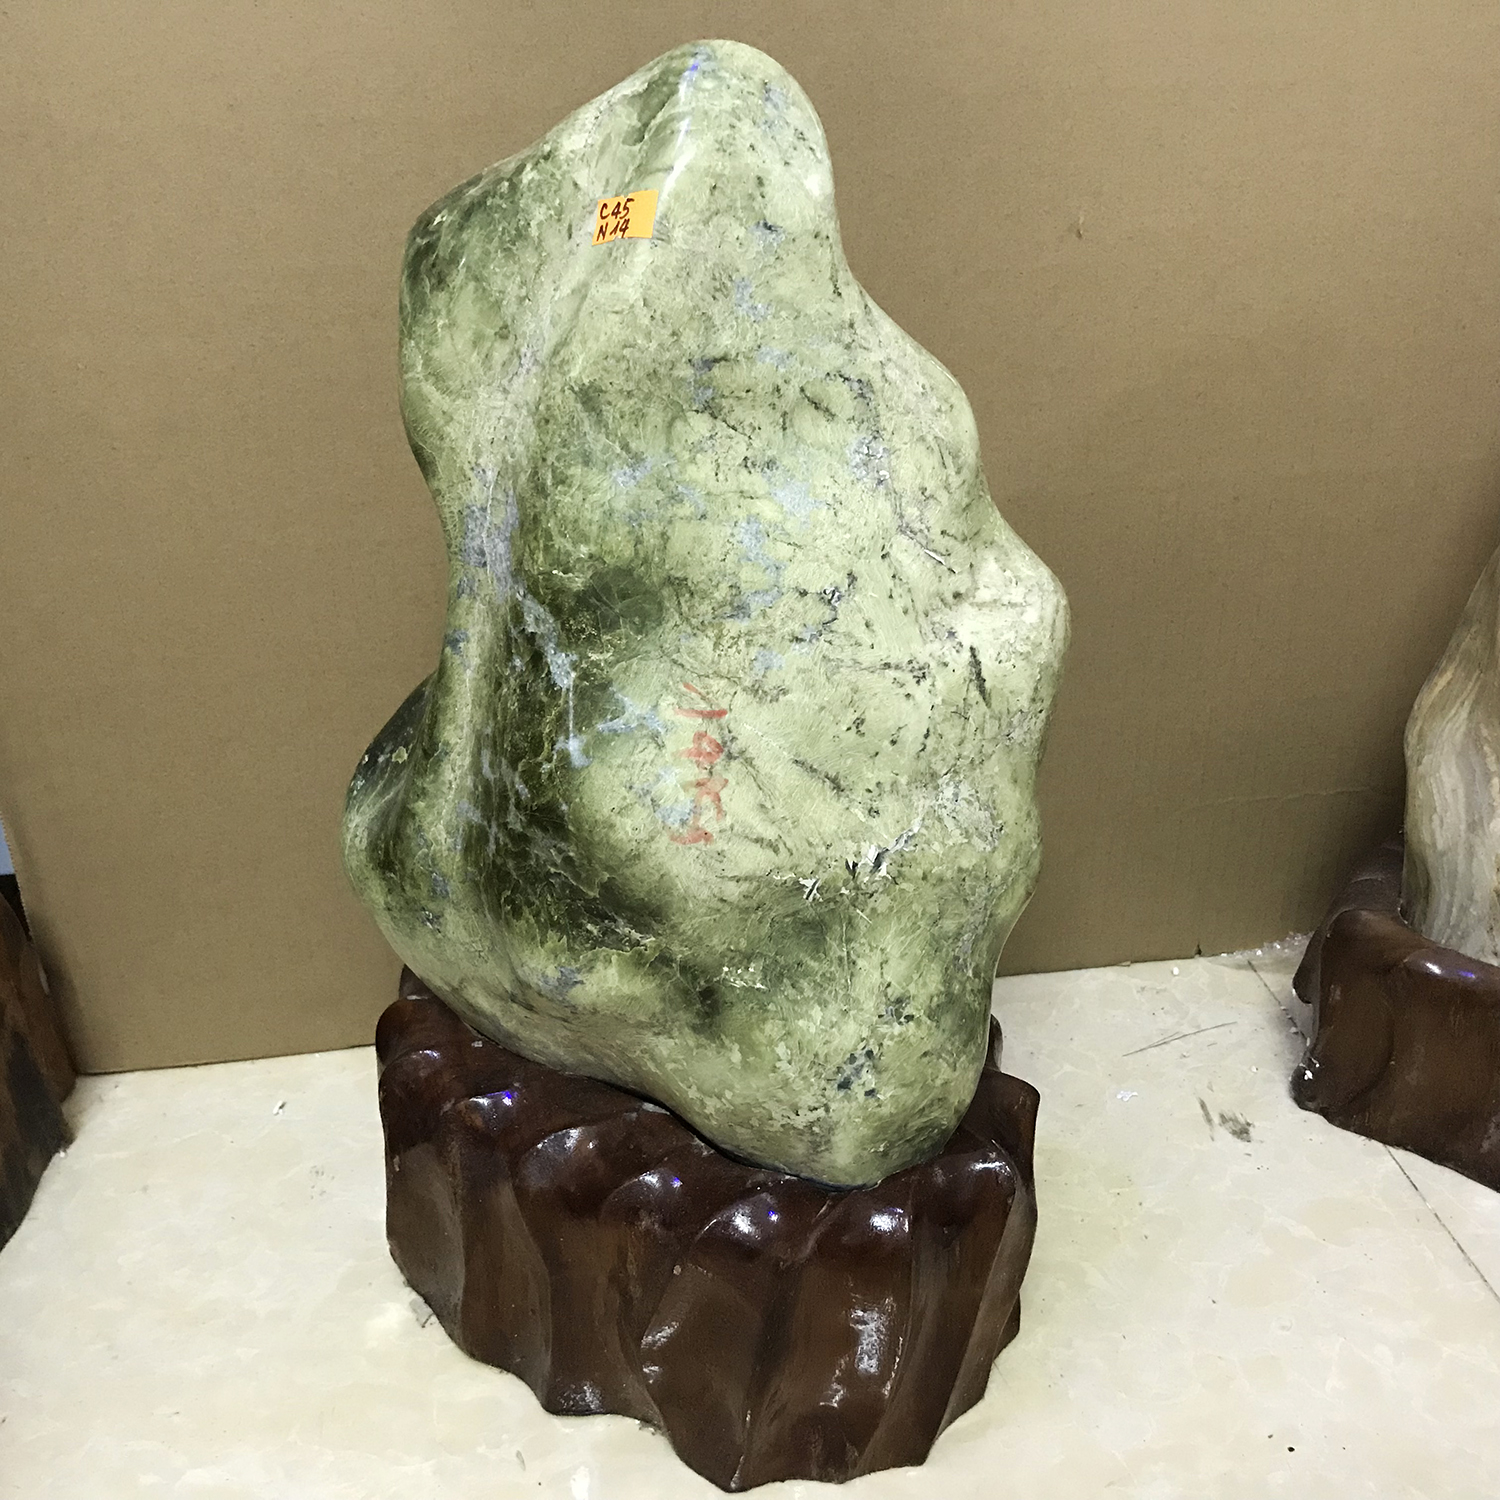 Cây đá tự nhiên màu xanh lá mạ cho người mệnh Hỏa và Mộc nặng khoảng hơn 10 kg, cao 32cm